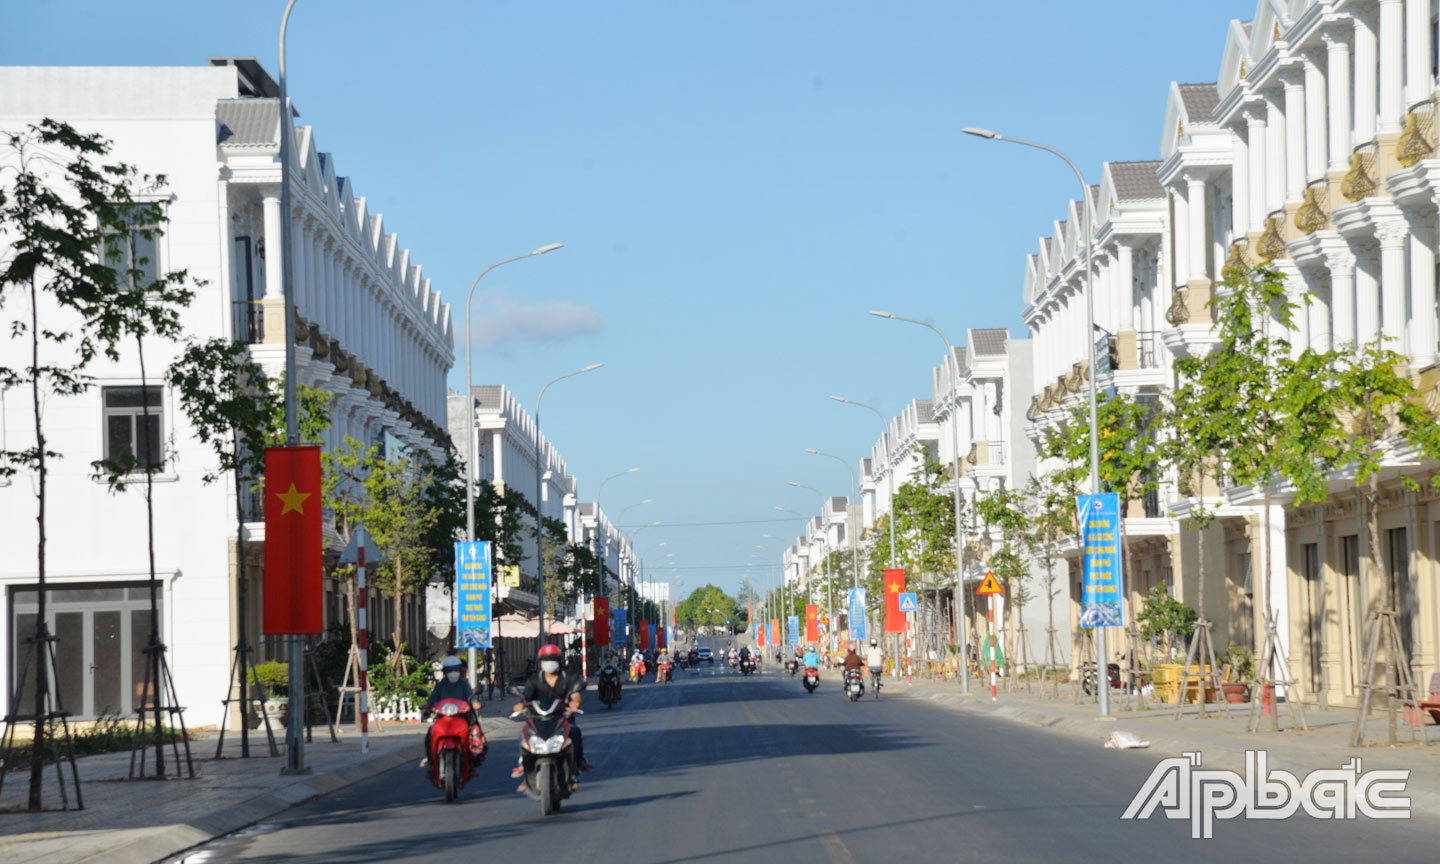 Đường Nguyễn Trọng Dân nối dài được đầu tư tạo thêm điểm nhấn cho đô thị Gò Công.